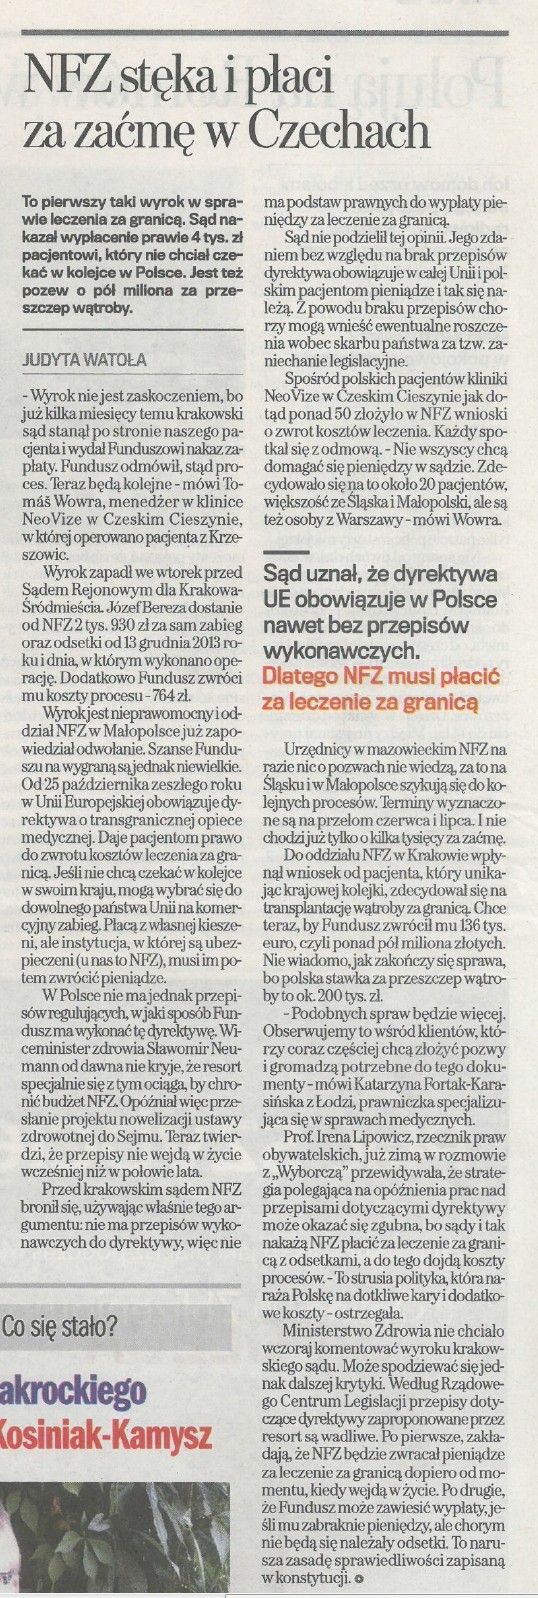 Gazeta Wyborcza 12.06.2014